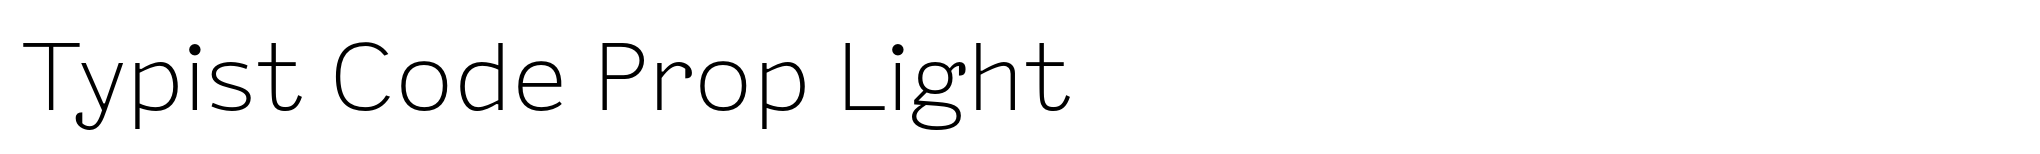 Typist Code Prop Light image